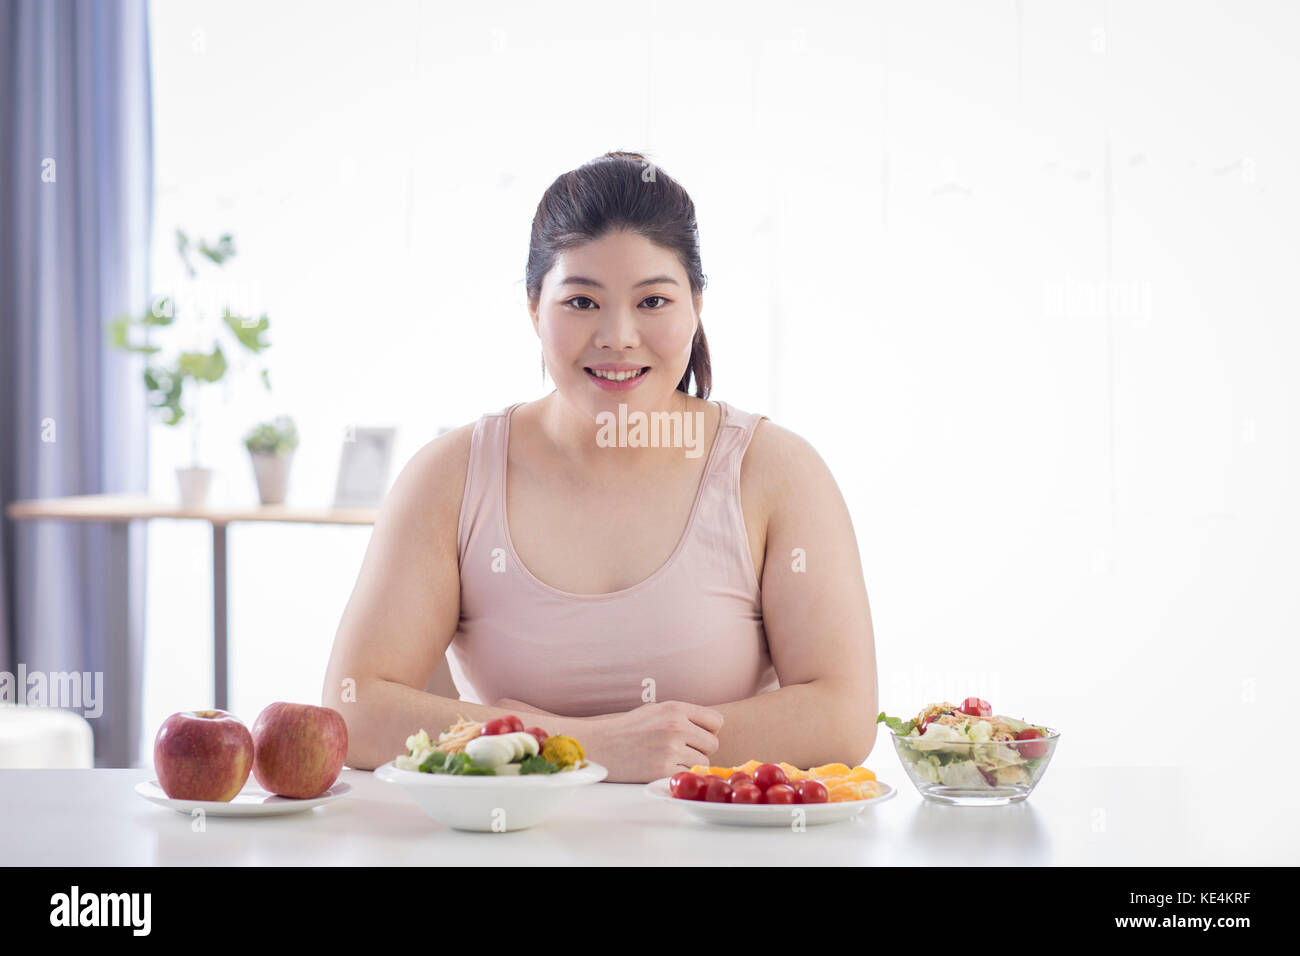 Portrait de jeune femme souriante avec des fruits et légumes Banque D'Images